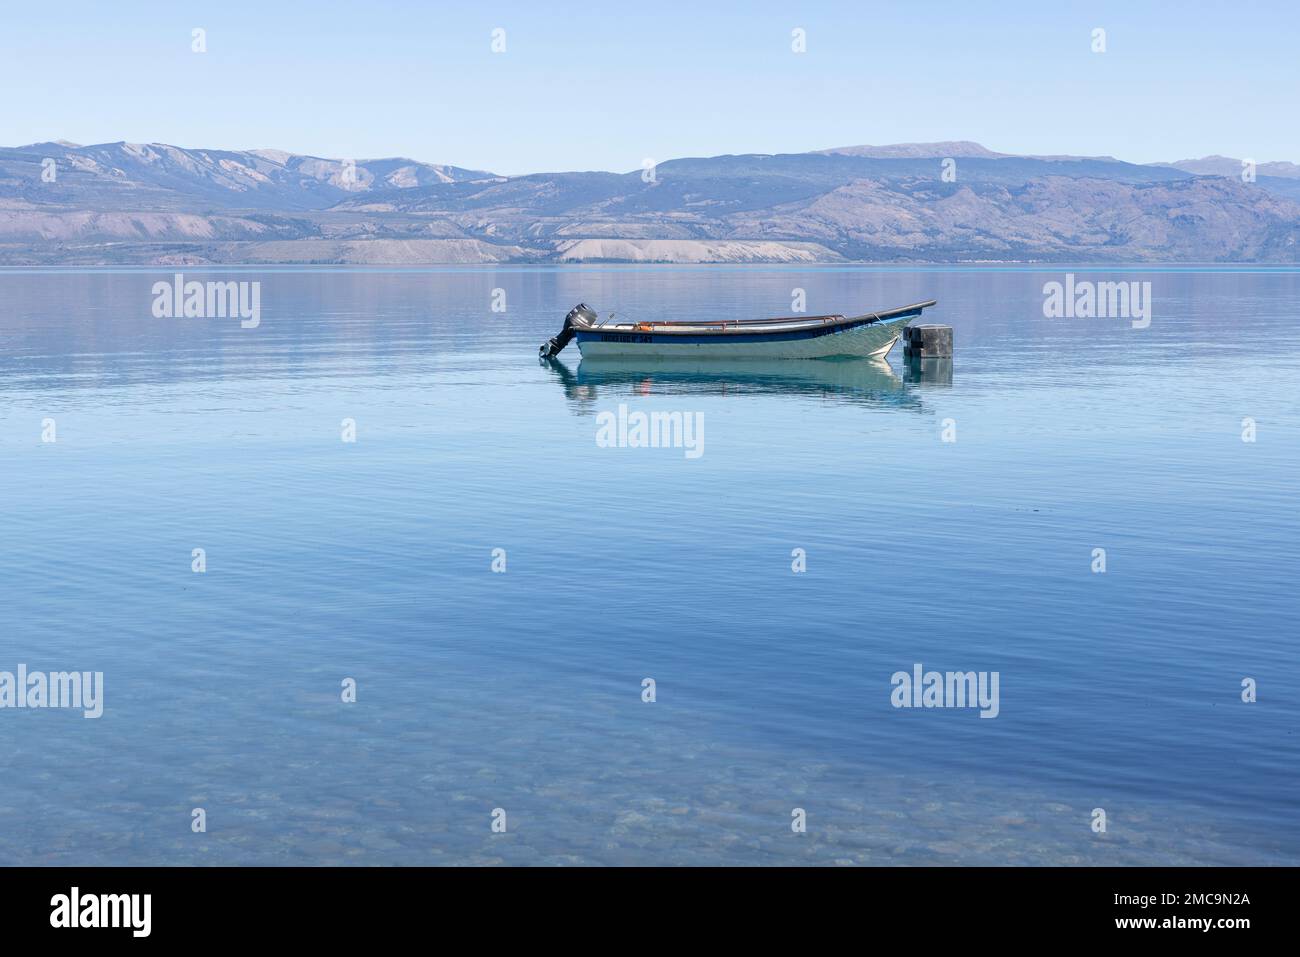 Fishing boat on Lago General Carrera near Puerto Rio Tranquilo, Chile Stock Photo